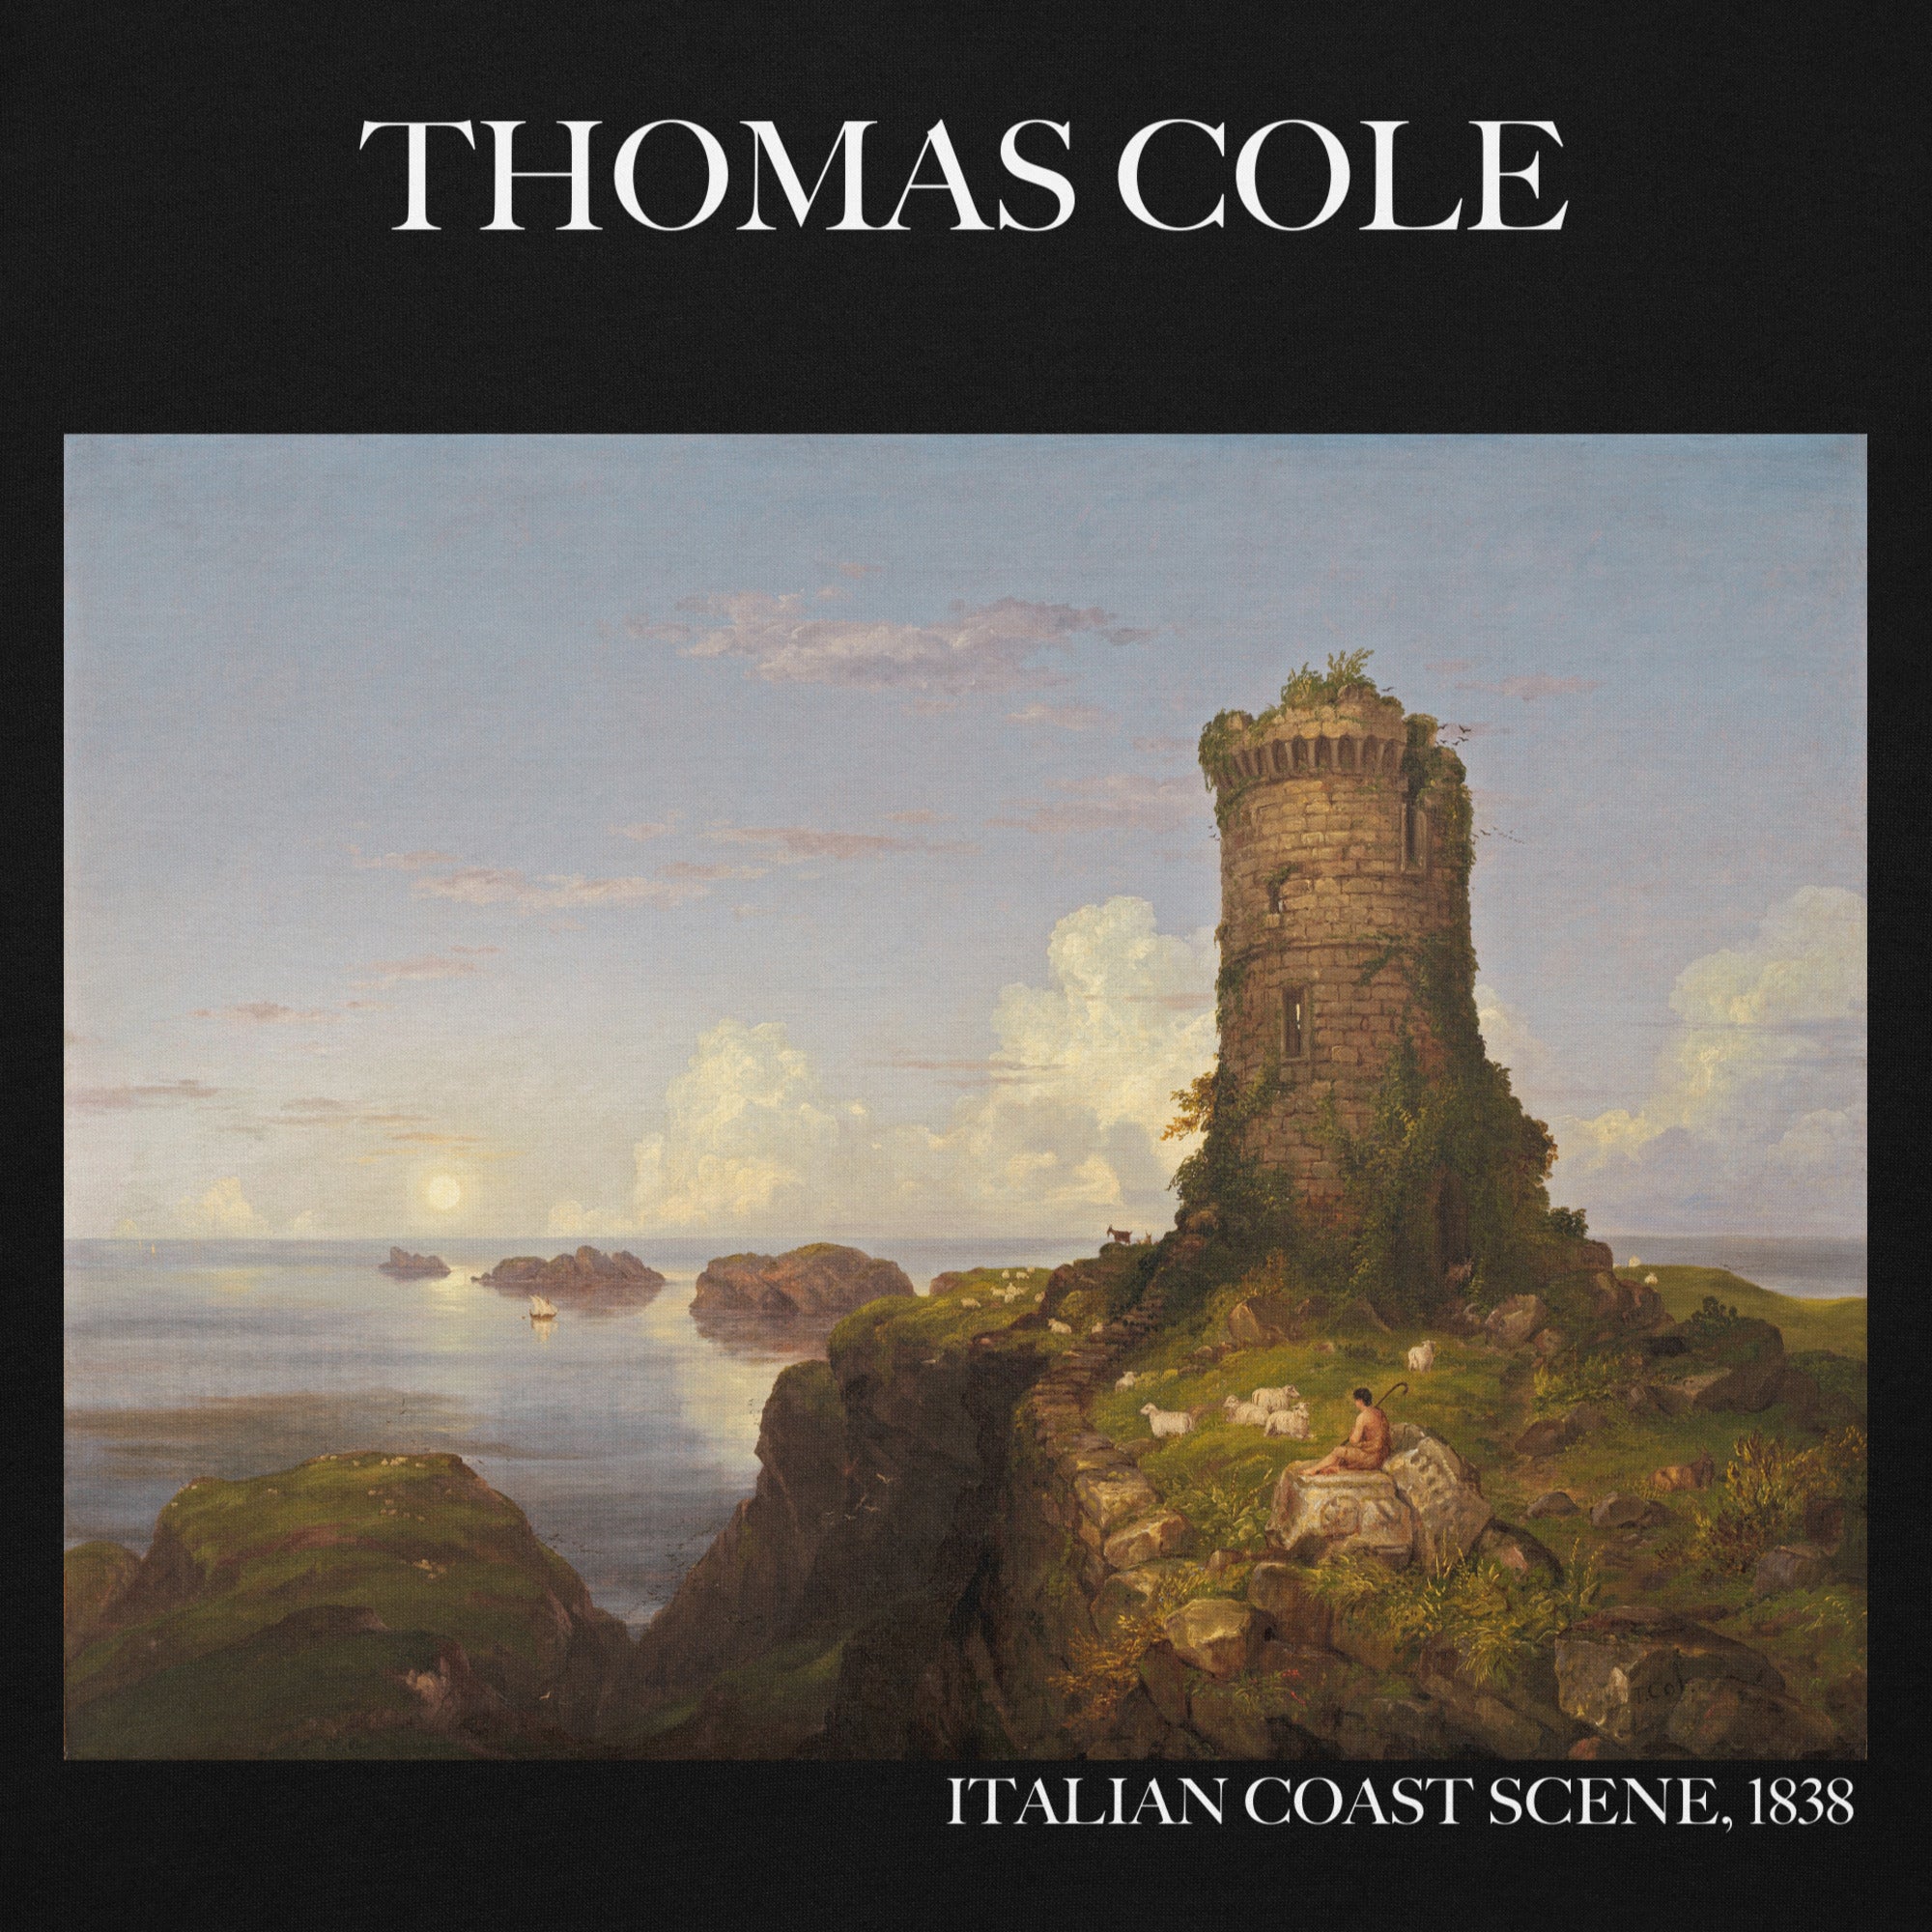 Thomas Cole 'Italian Coast Scene' Famous Painting Hoodie | Unisex Premium Art Hoodie